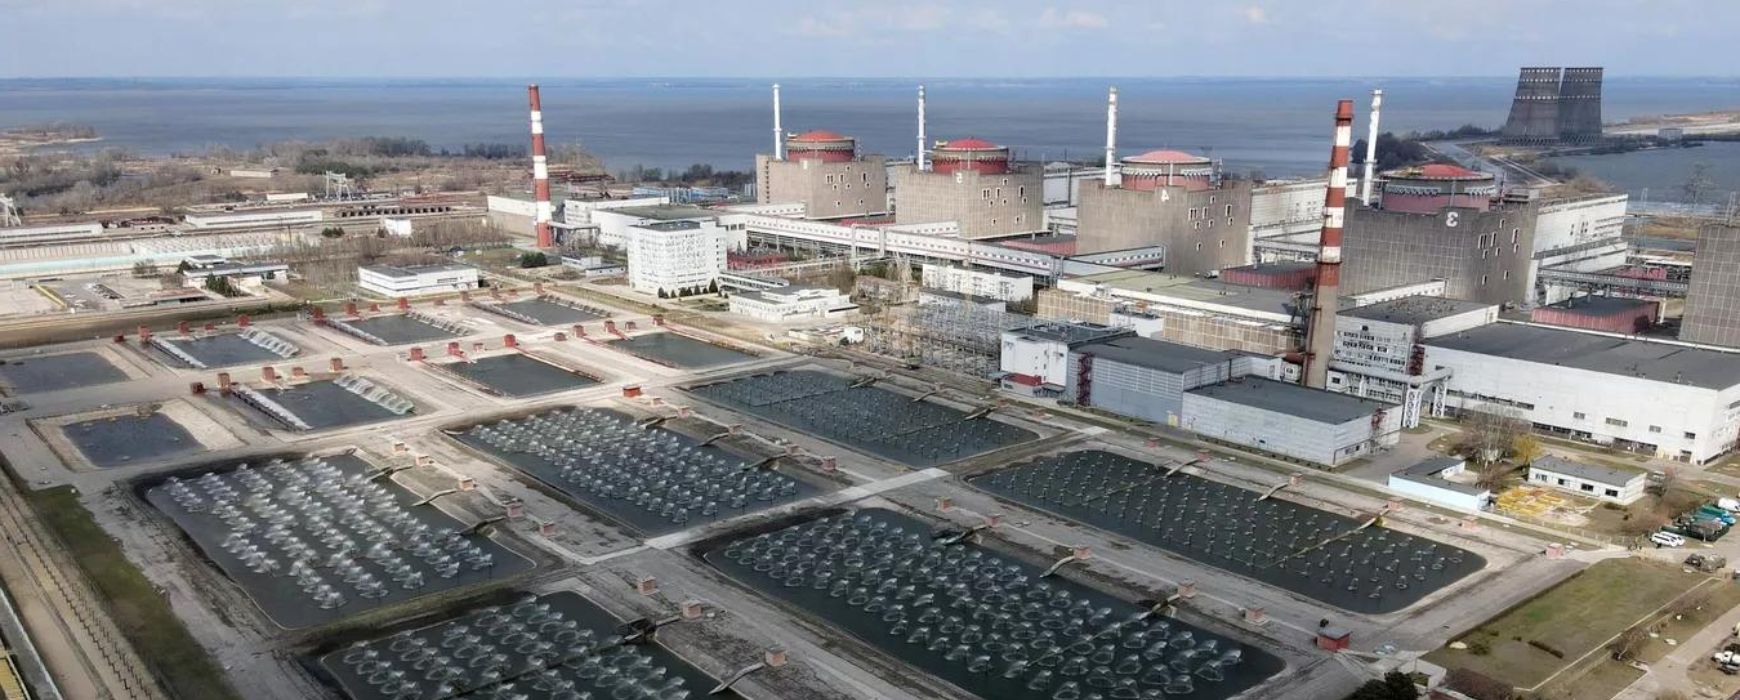 Ανησυχία στη Ζαπορίζια: Η Ρωσία ανέστειλε τη λειτουργία του πυρηνικού σταθμού – Φόβοι για «προβοκάτσια» από το Κίεβο